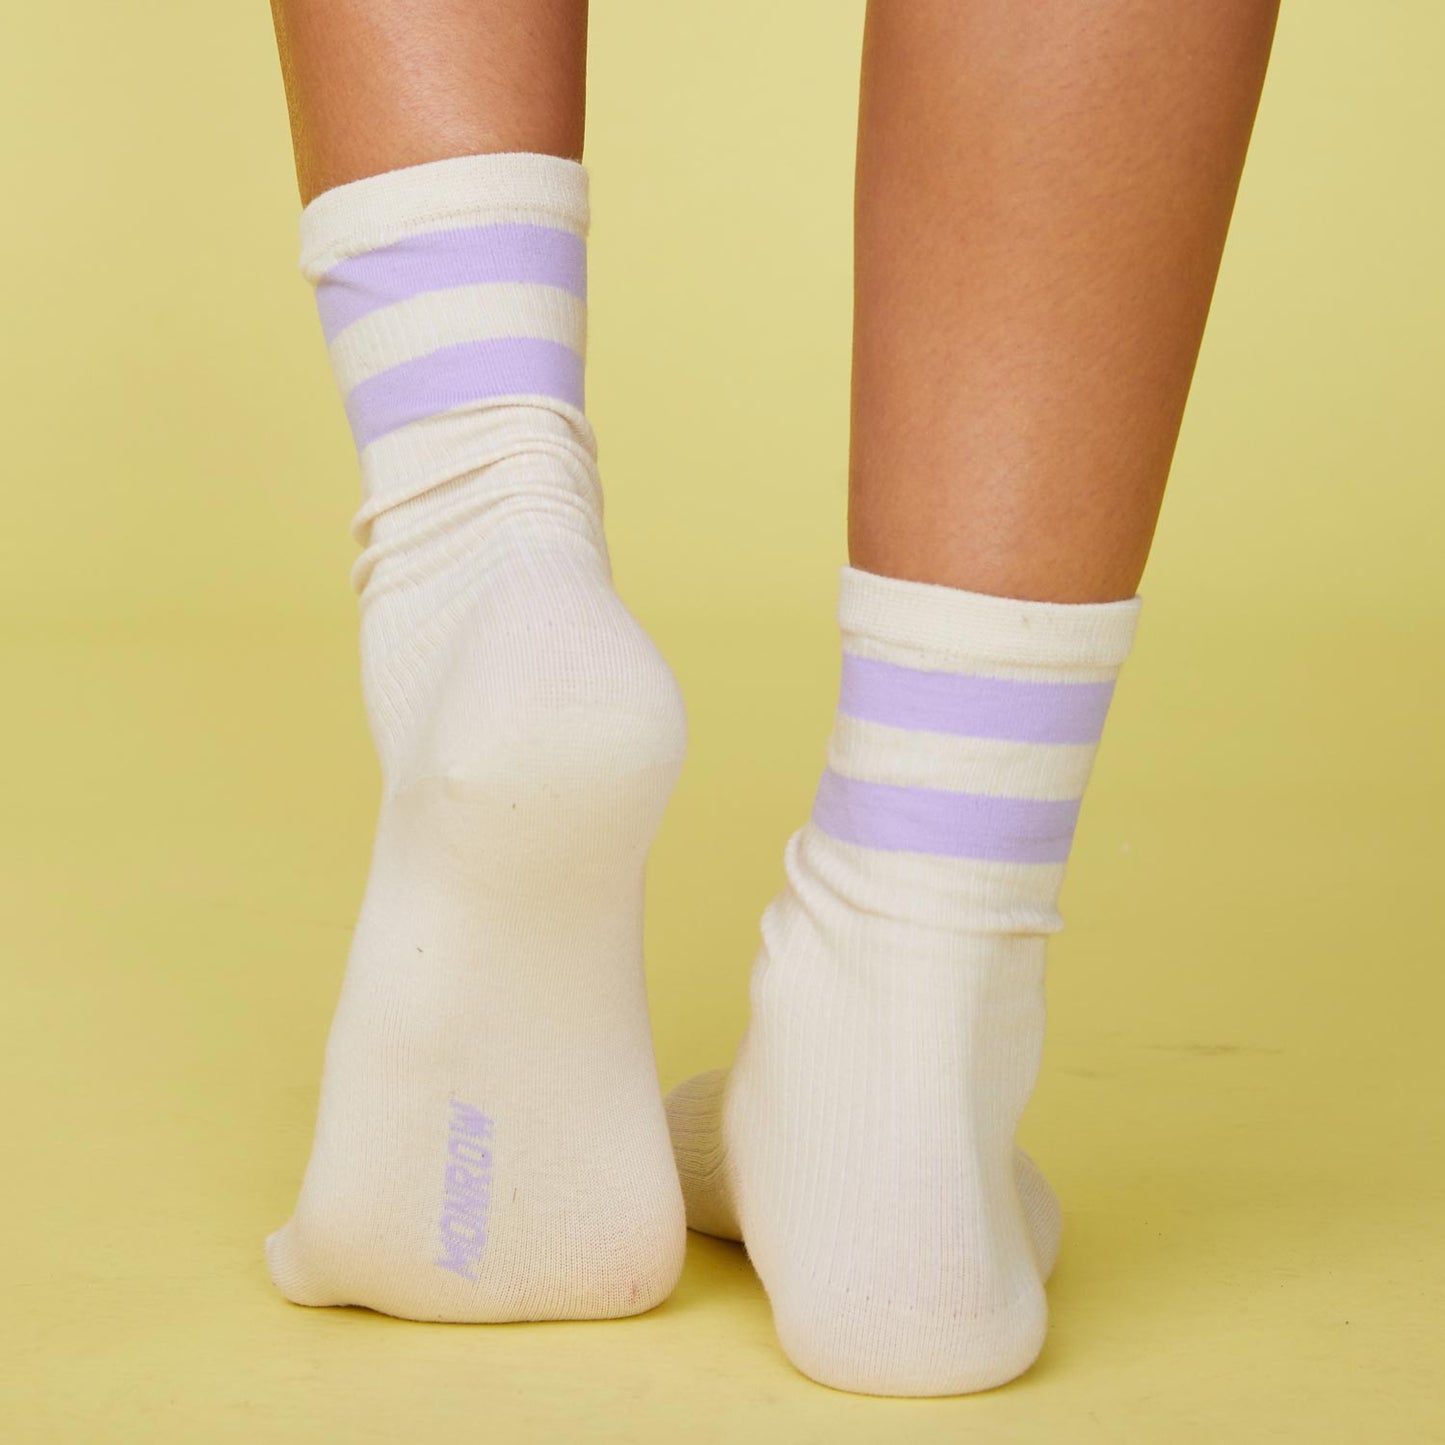 Back view of model's feet wearing the stripe socks in wisteria.